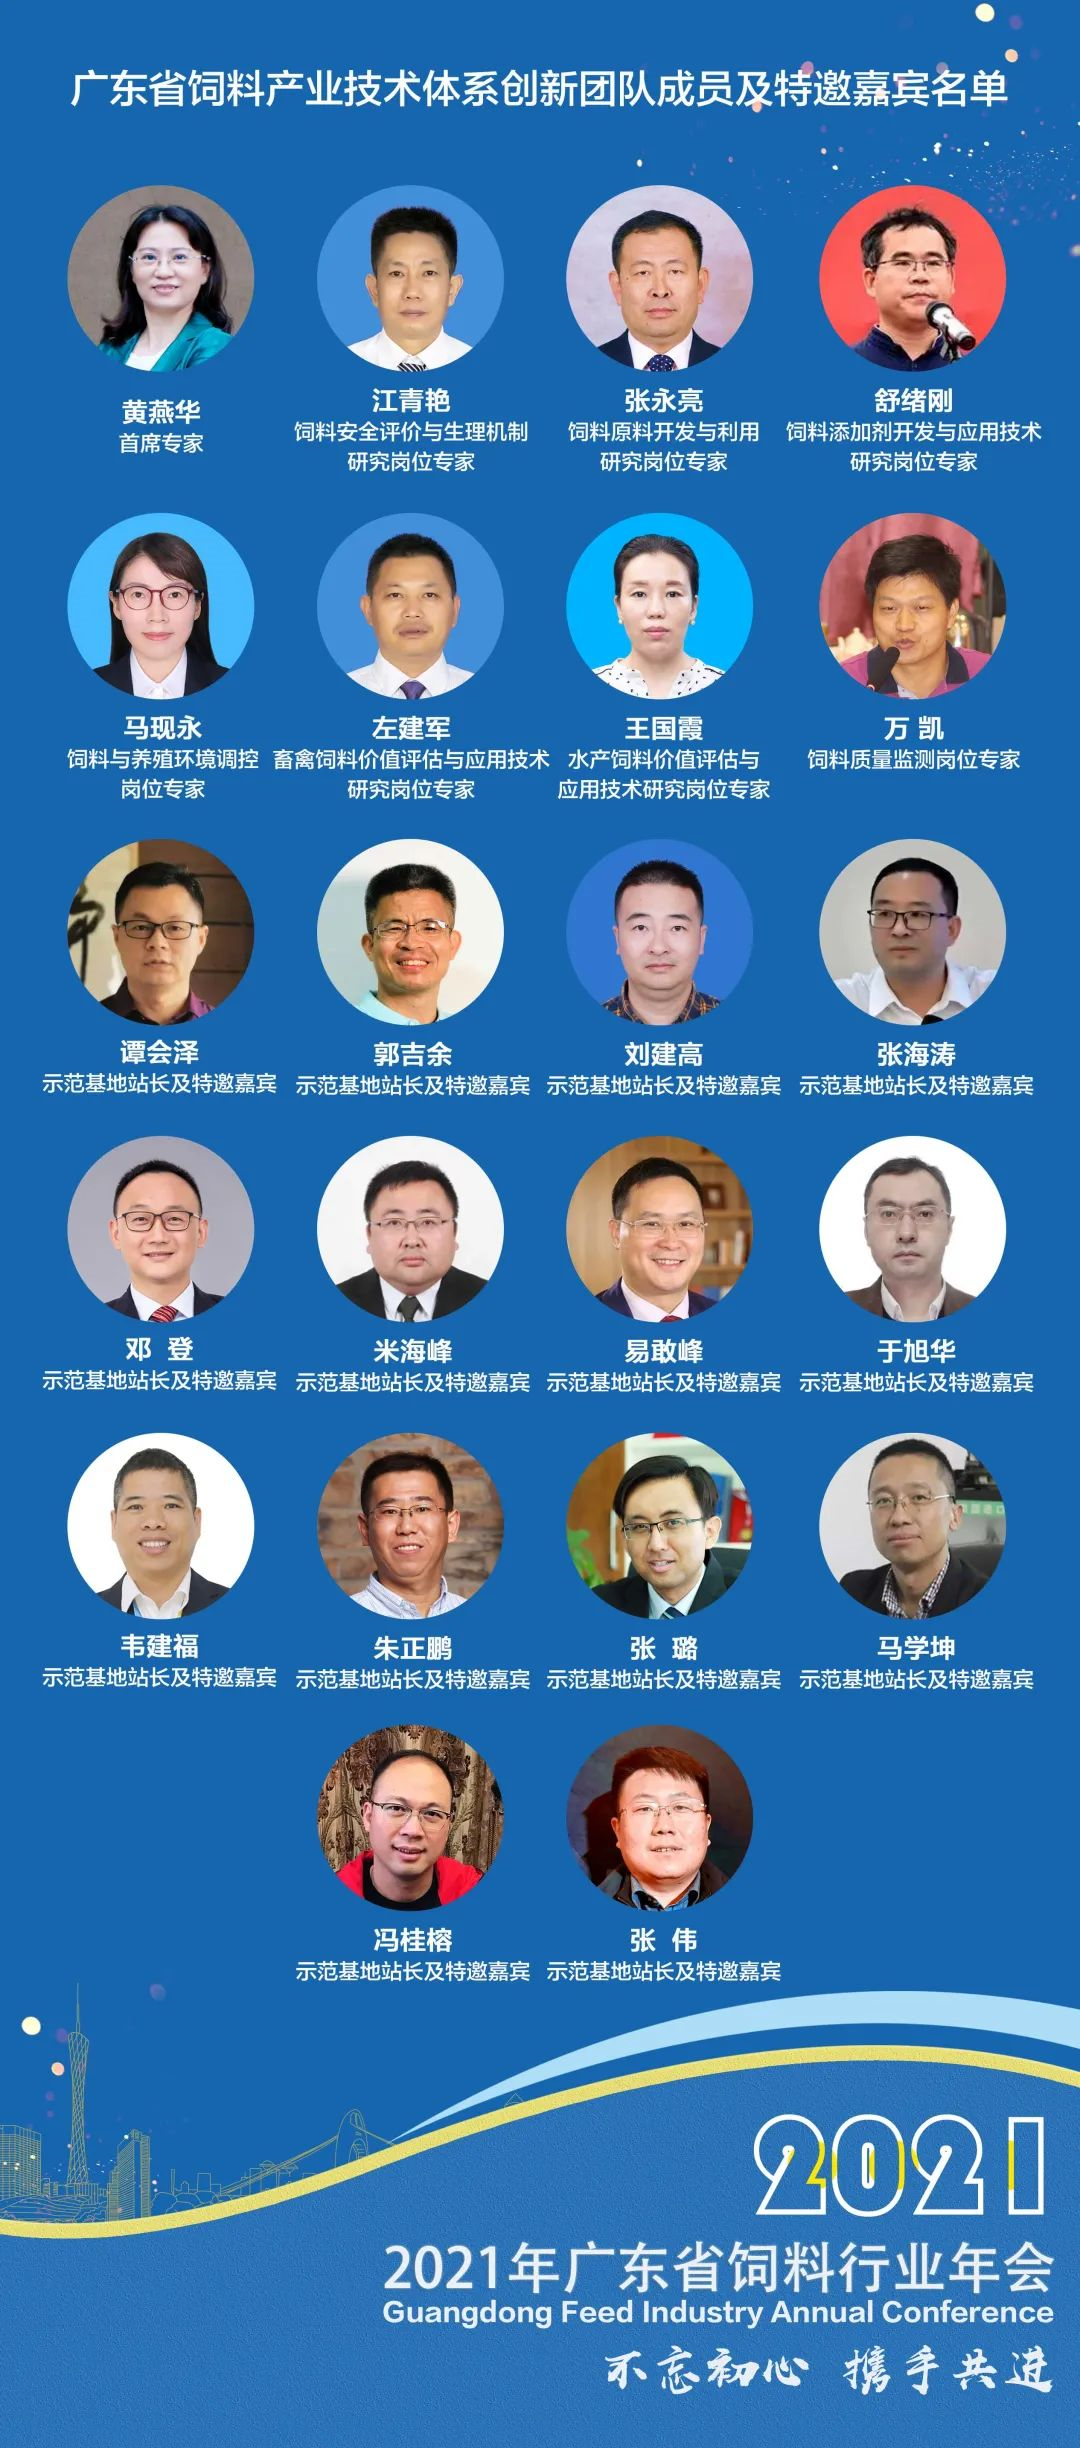 万事俱备 恭候光临—2021年广东省饲料行业年会筹备 公告（二）